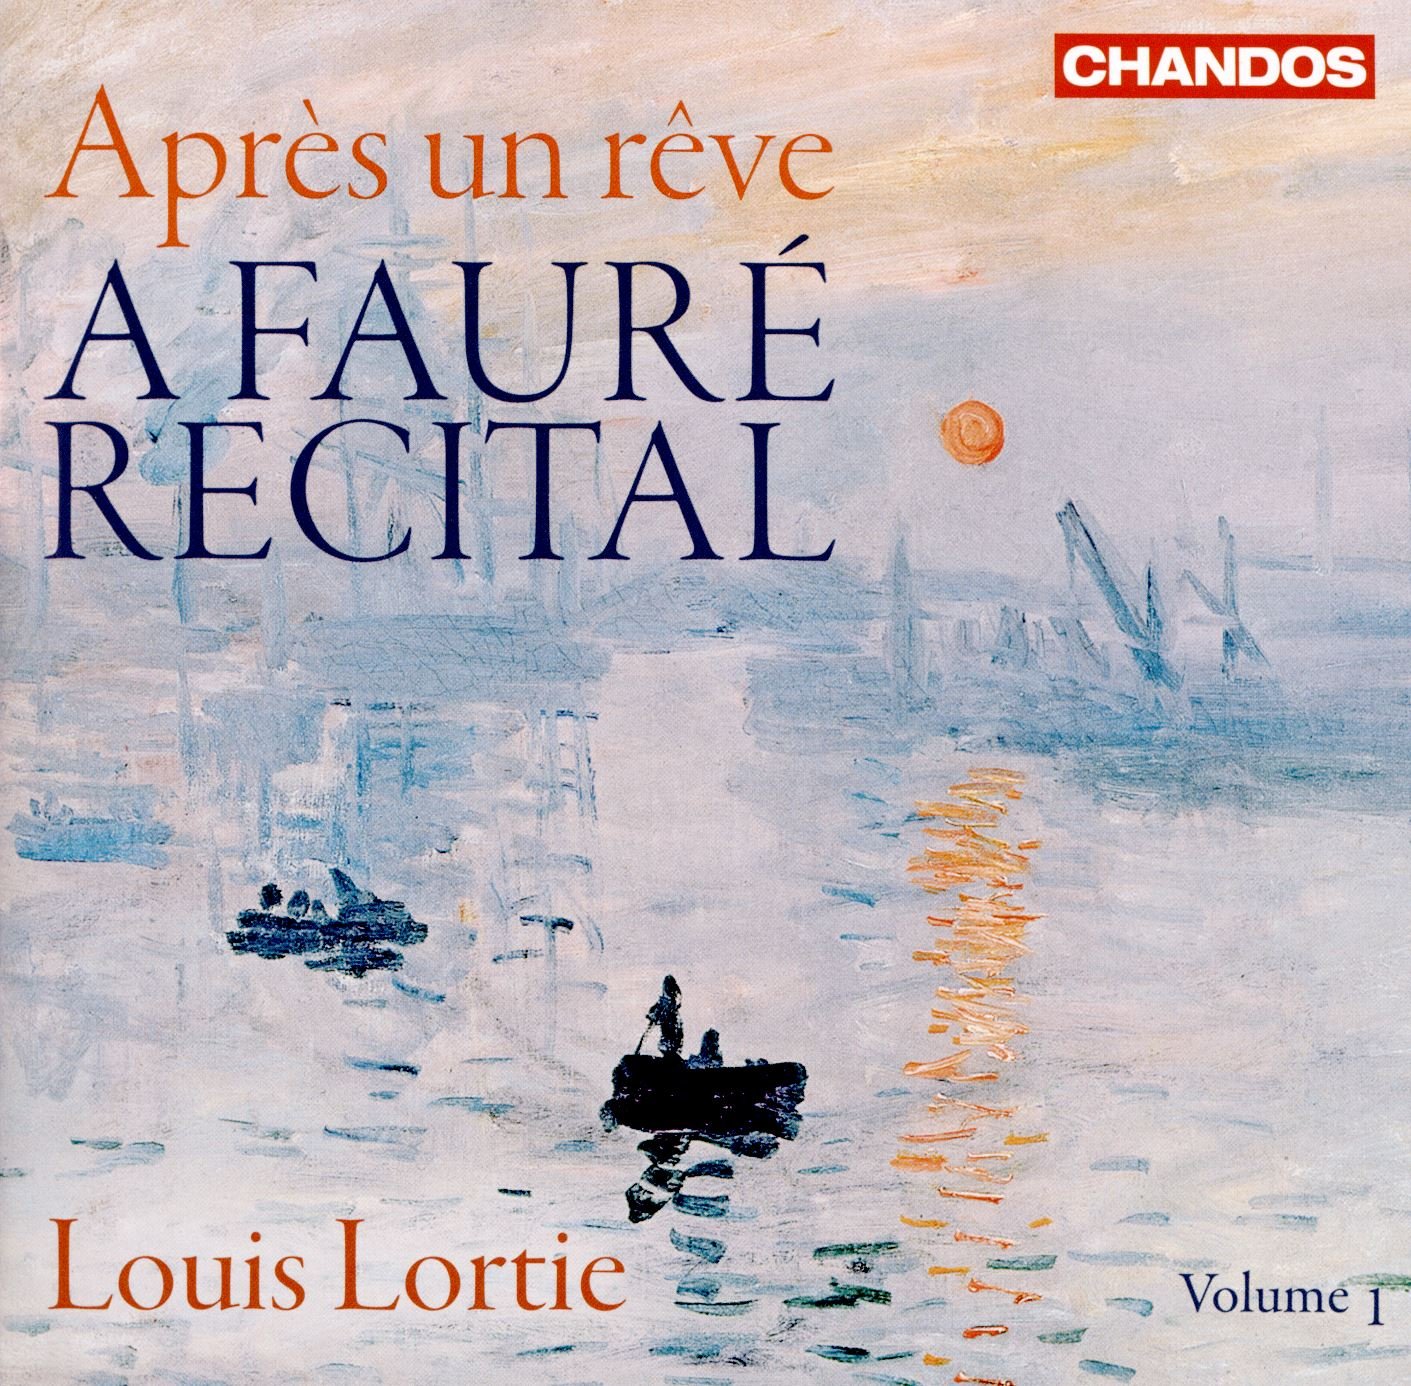 Lortie - Faure Recital, Vol. 1, Apres un reve 24-96